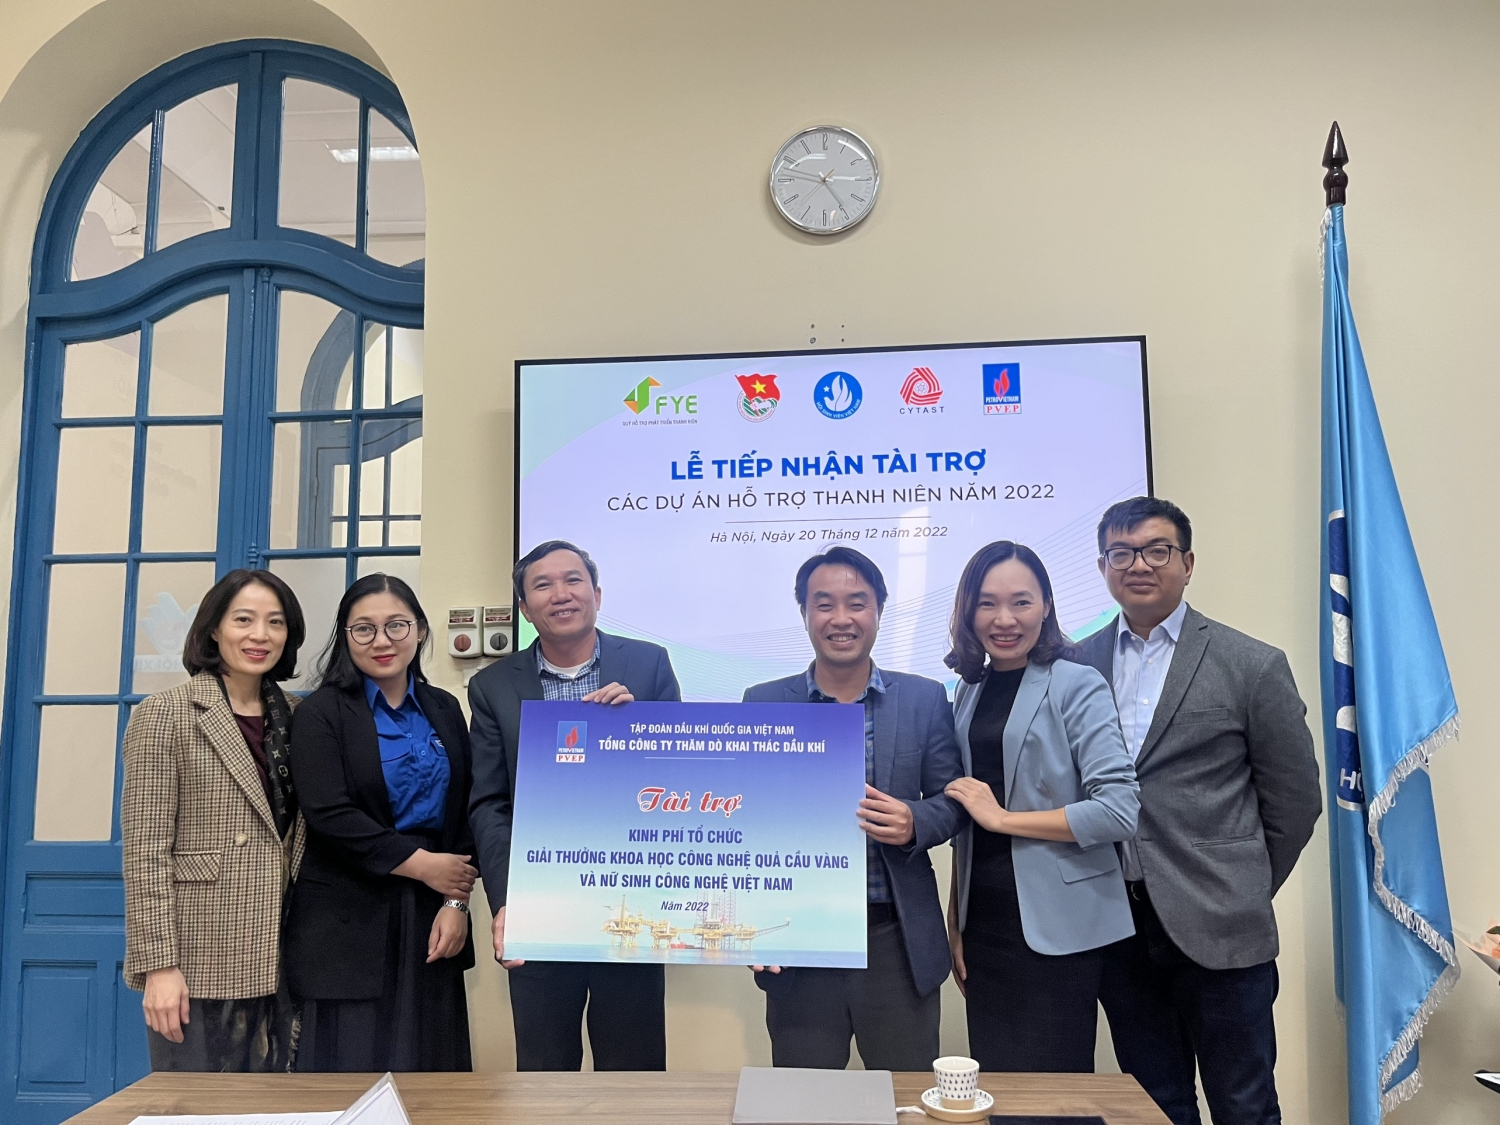 PVEP tài trợ Dự án Hỗ trợ Thanh niên Việt Nam năm 2022